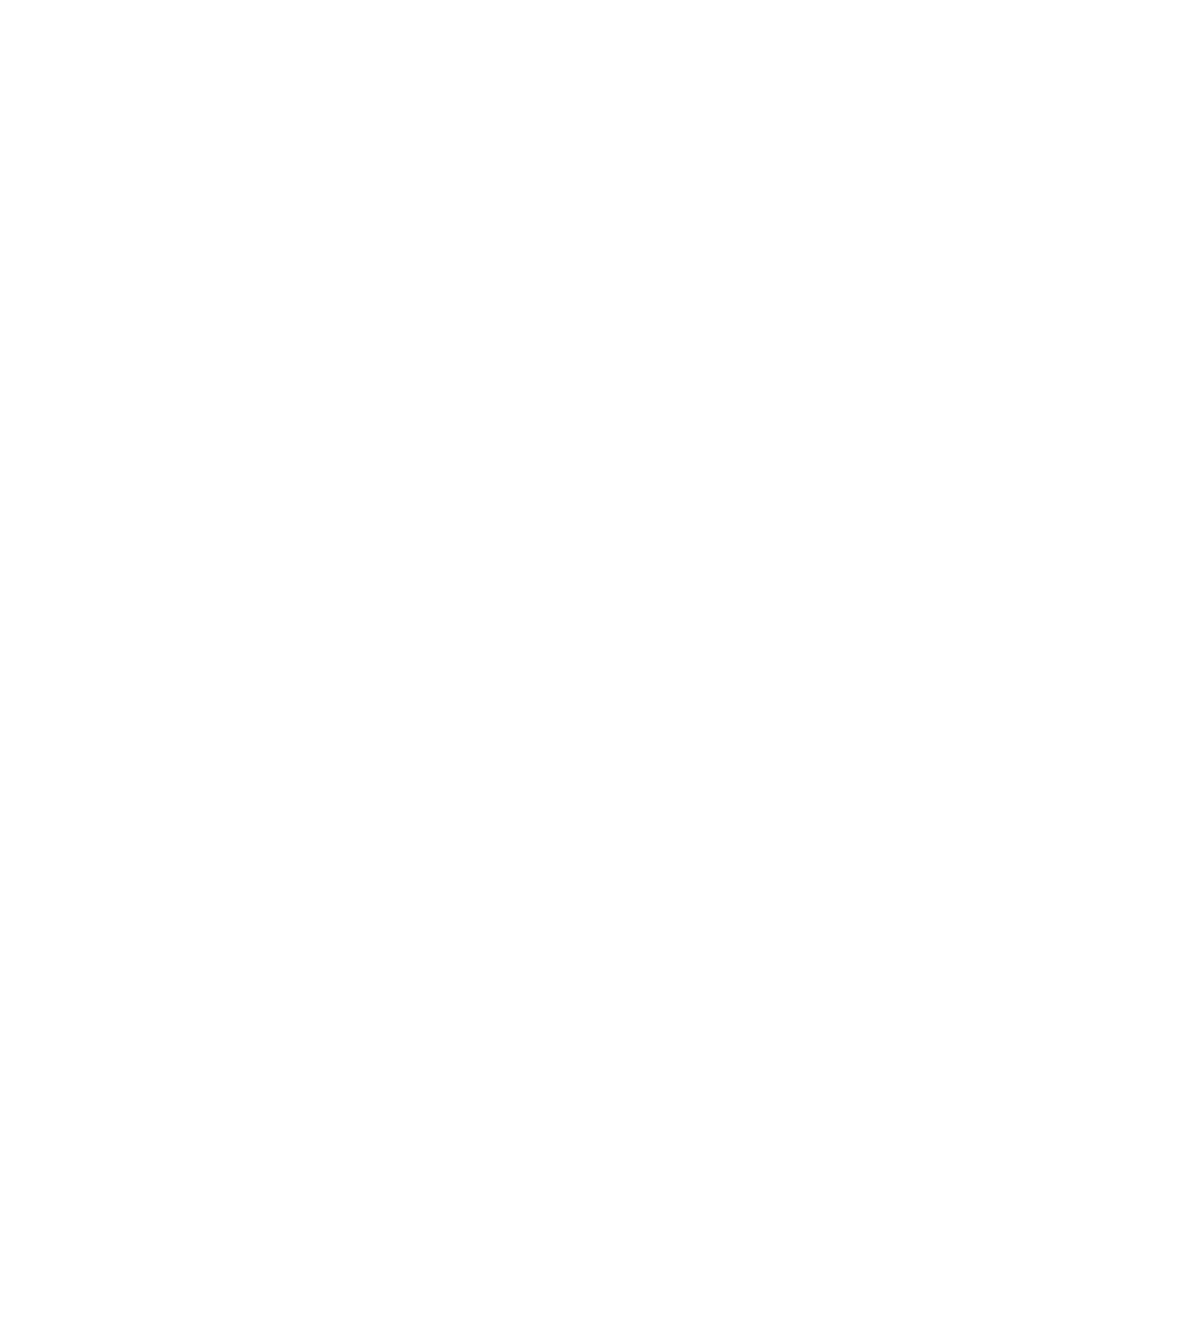 The Organic Alpaca